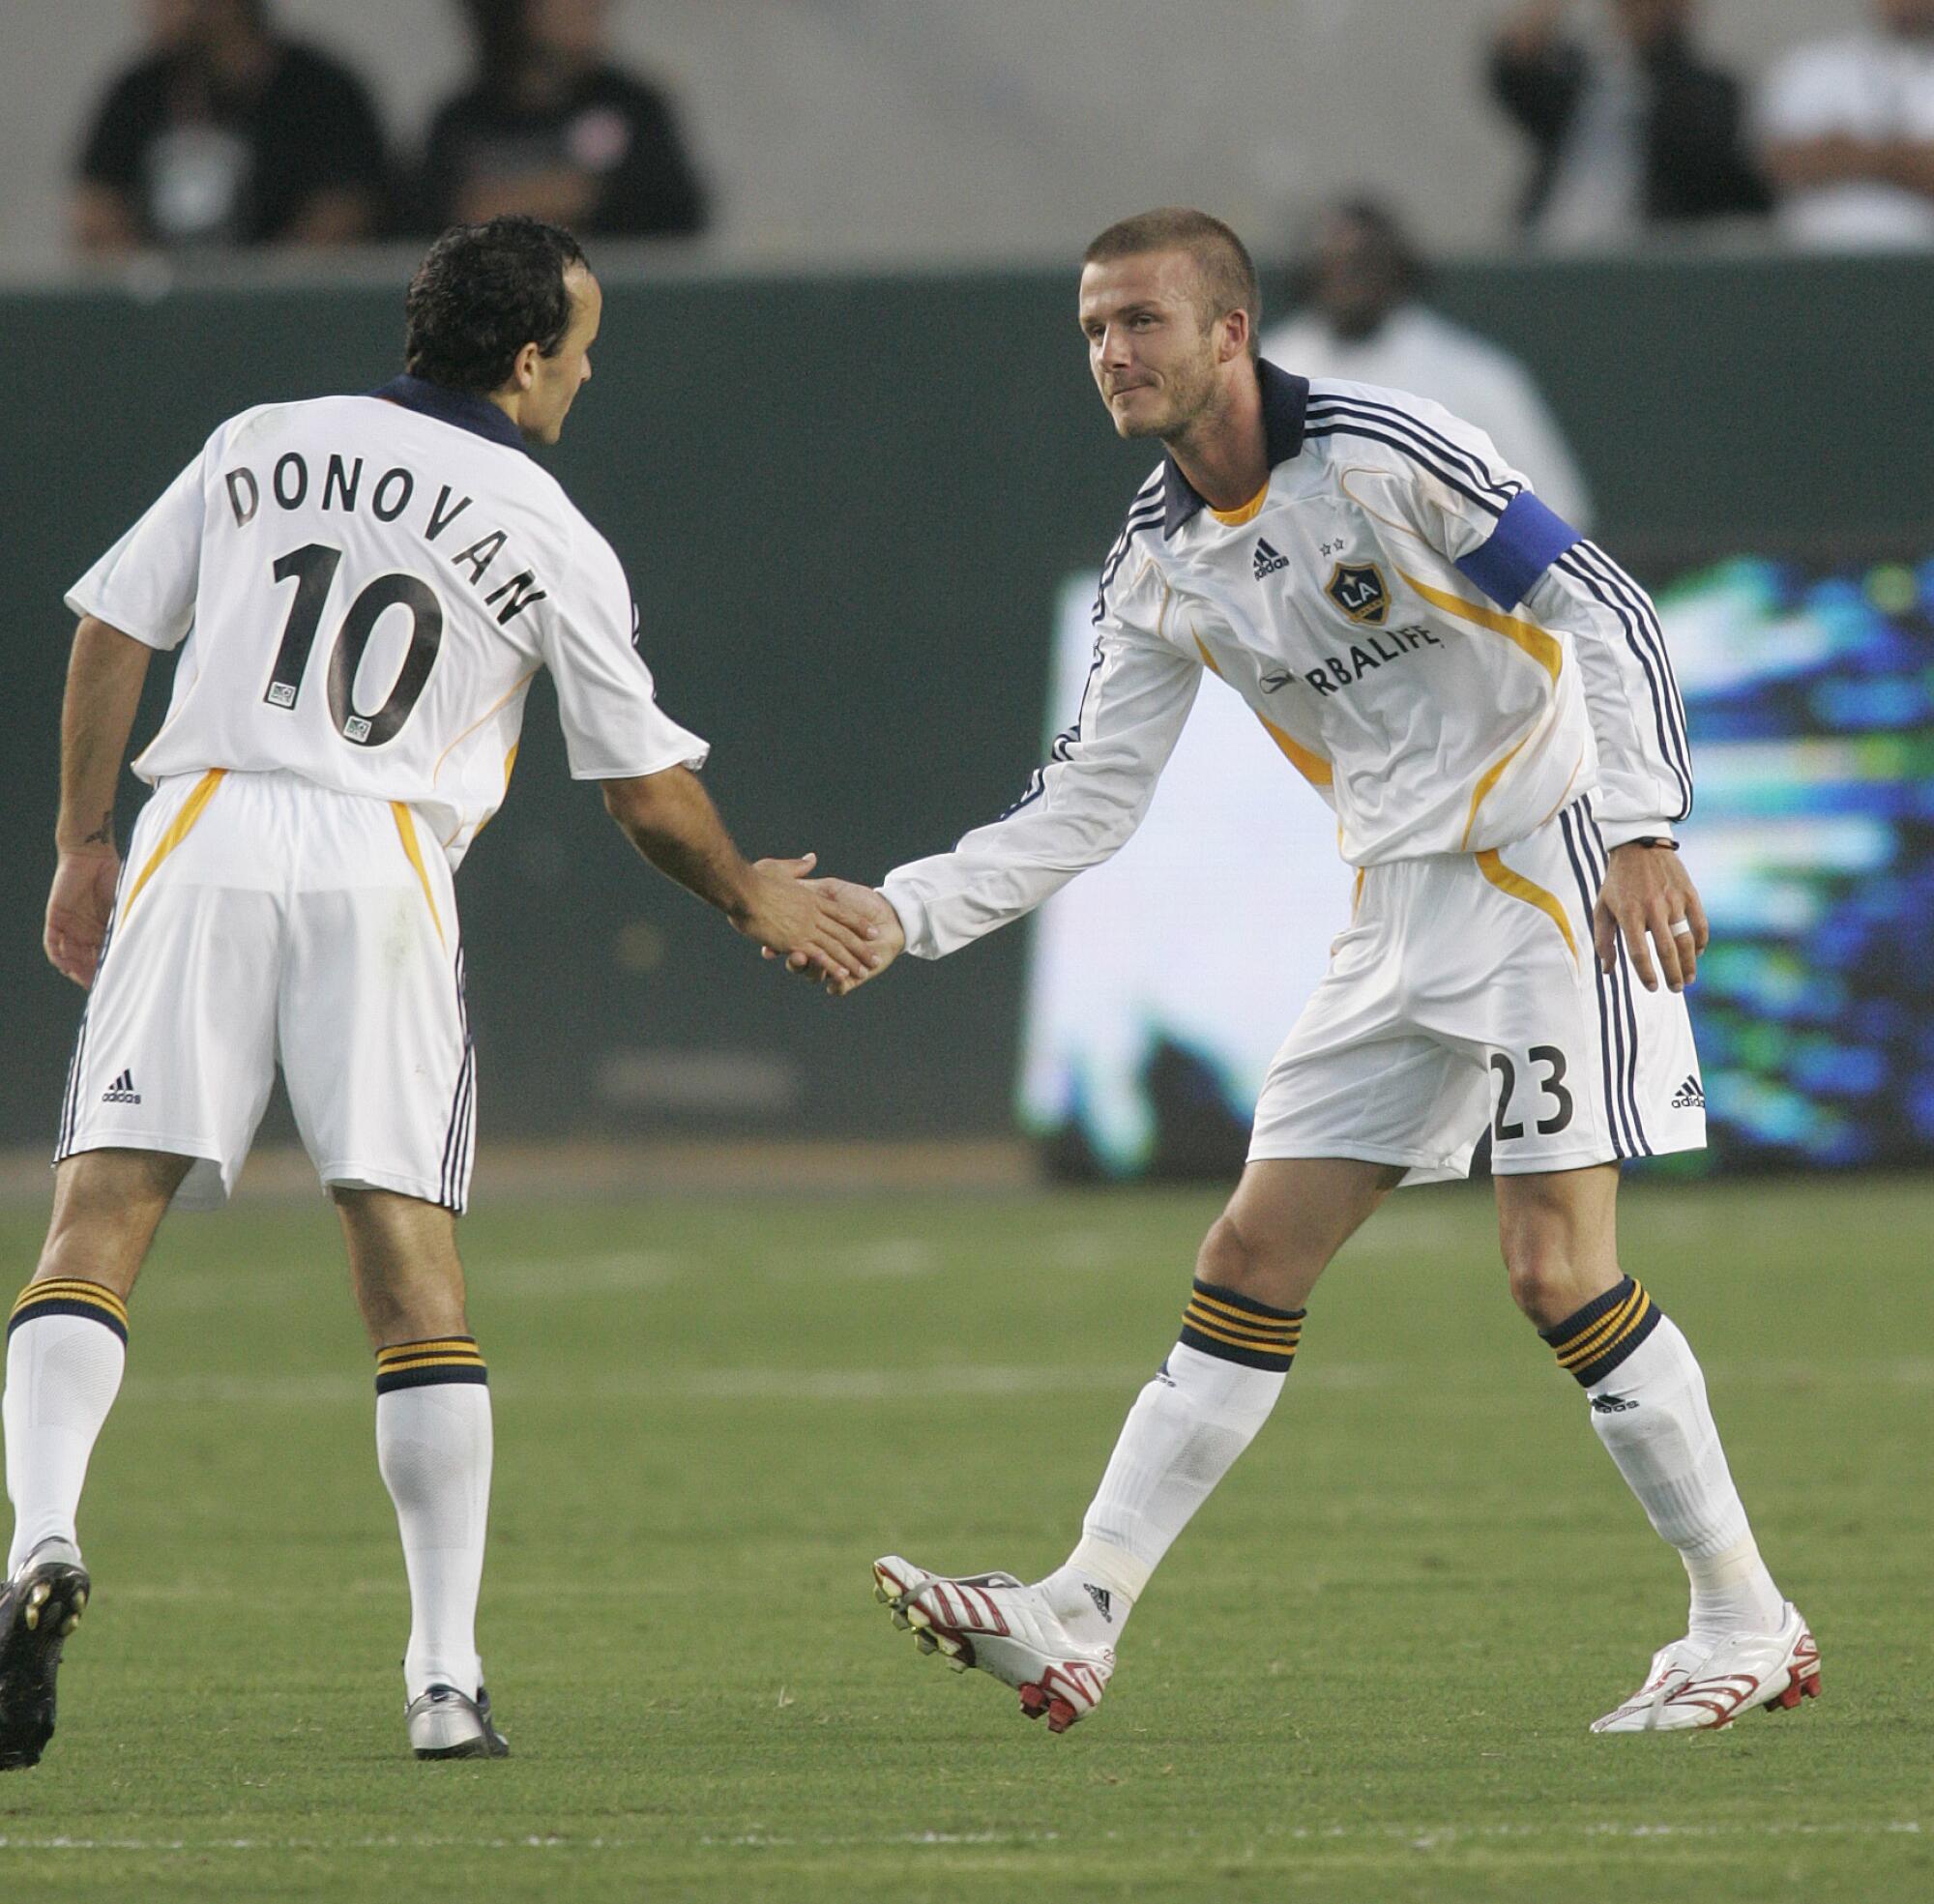 El Galaxy ha tenido una rica historia de traer grandes jugadores, como Landon Donovan y David Beckham.